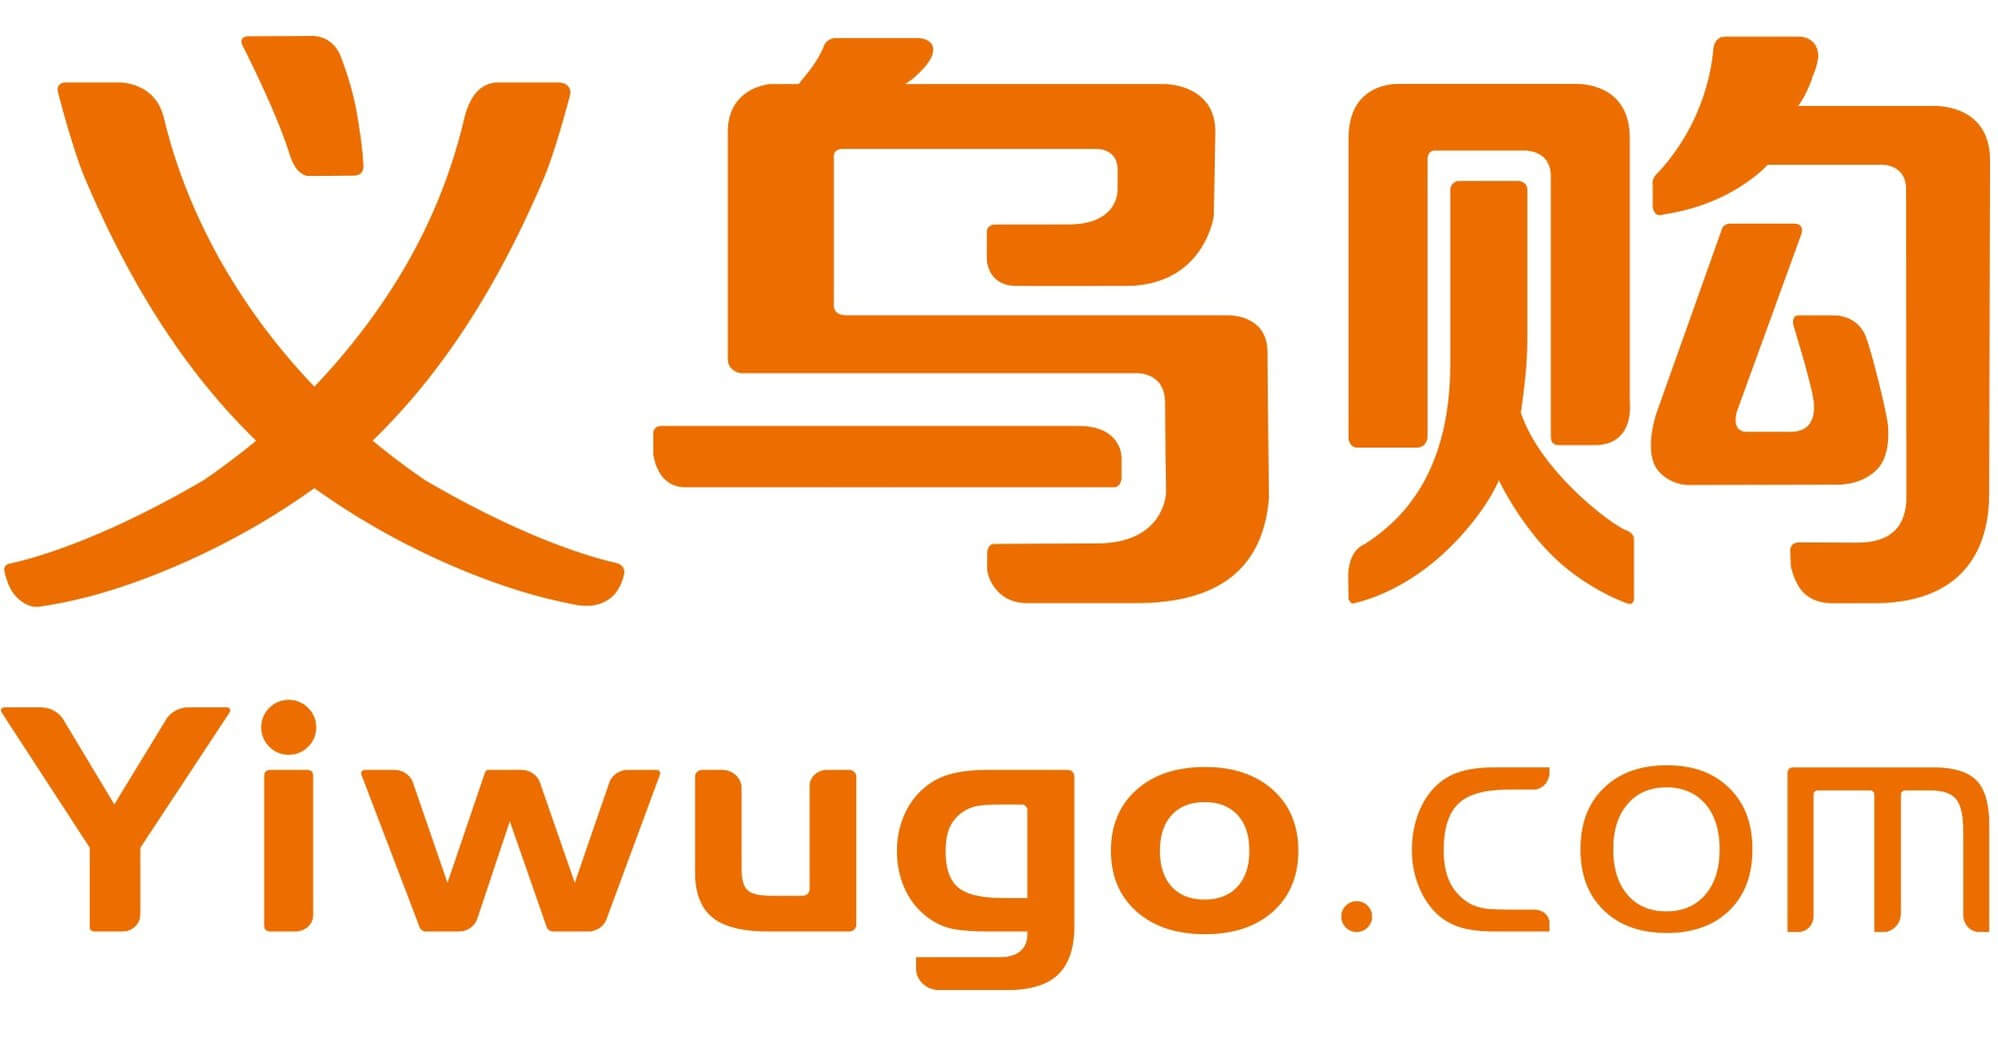 yiwugo logo